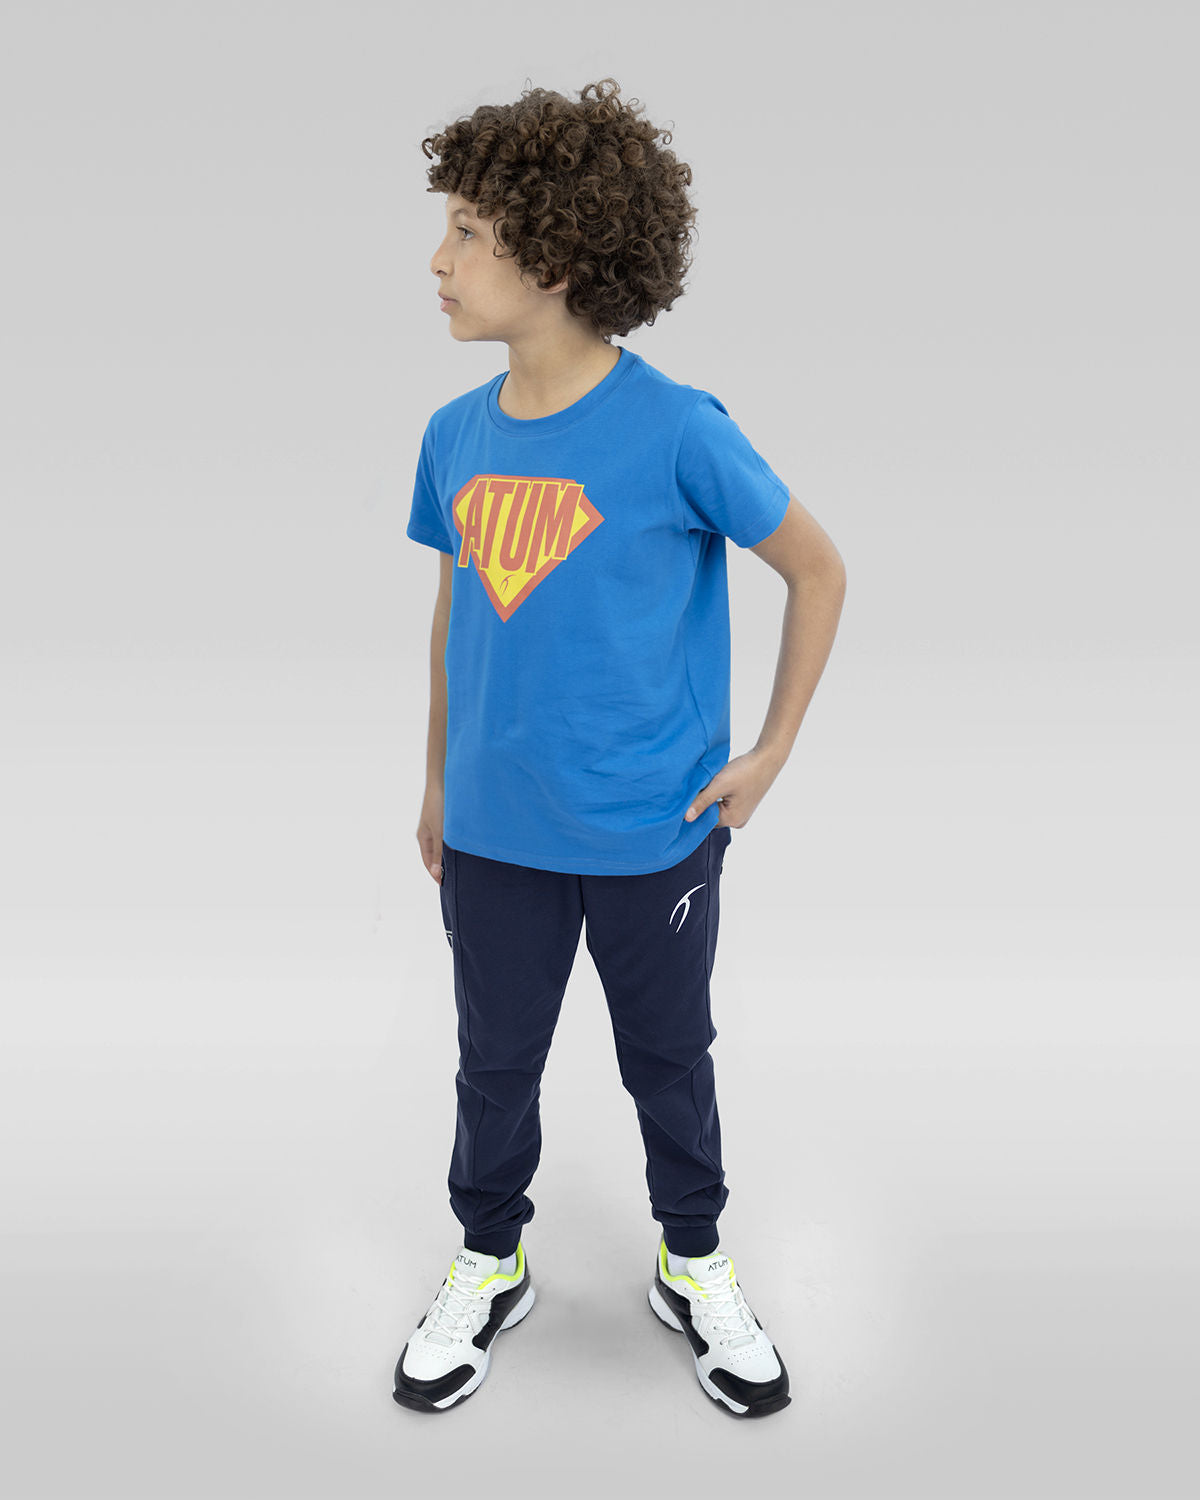 Atum Kides Super Hero T-shirts - Atum Egypt